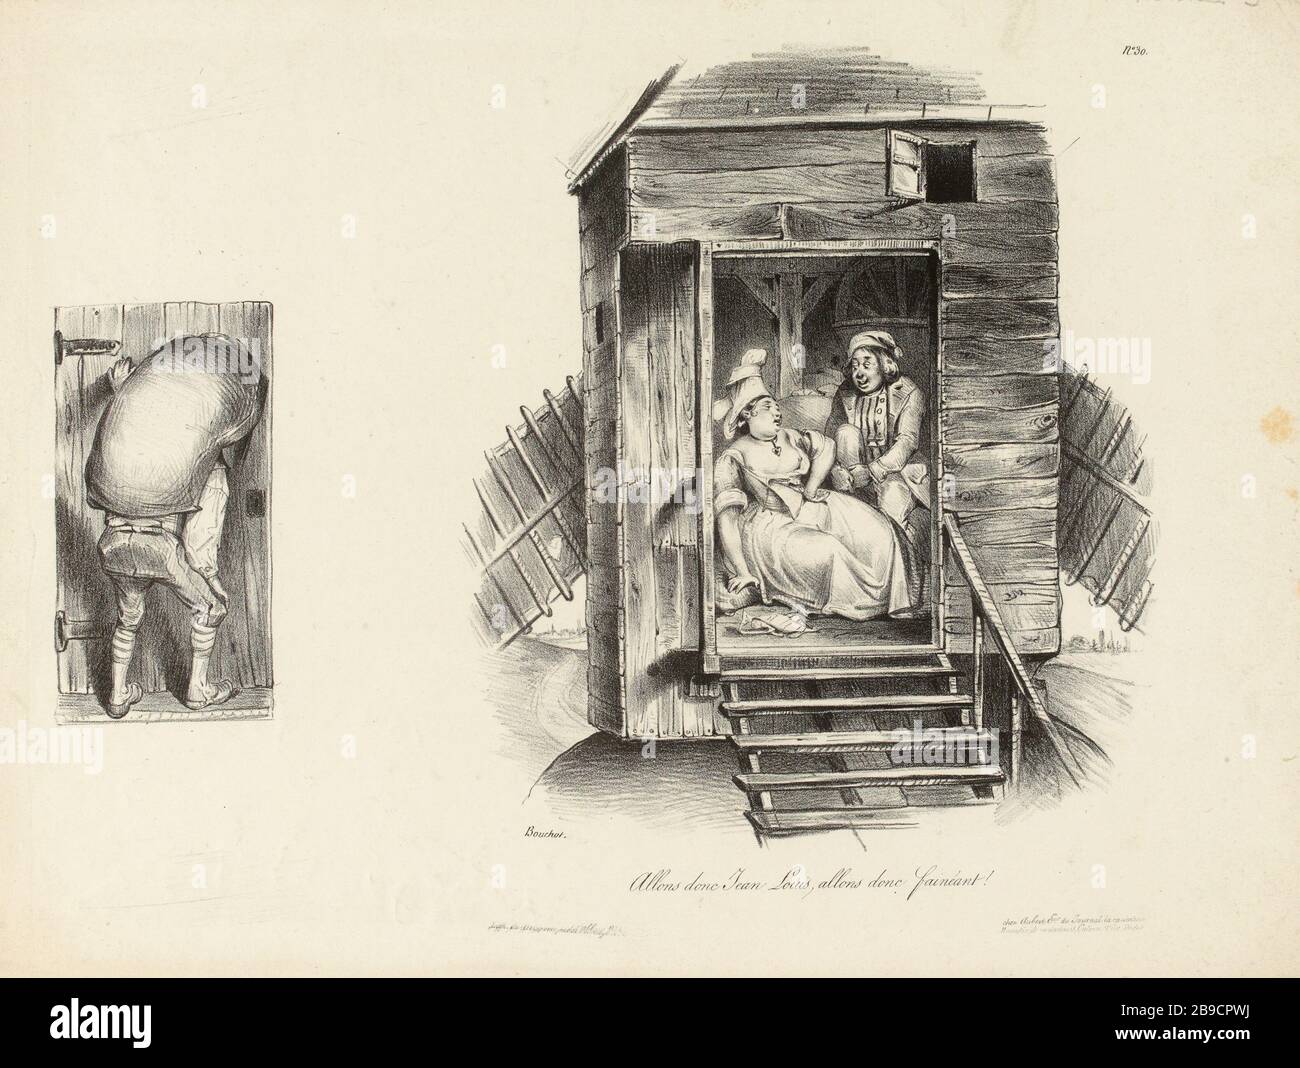 N° 30 / non-sens Jean Louis, venez paresseux! [...] (Titre enregistré) | morale cachée (1832) (dans son ensemble) Banque D'Images